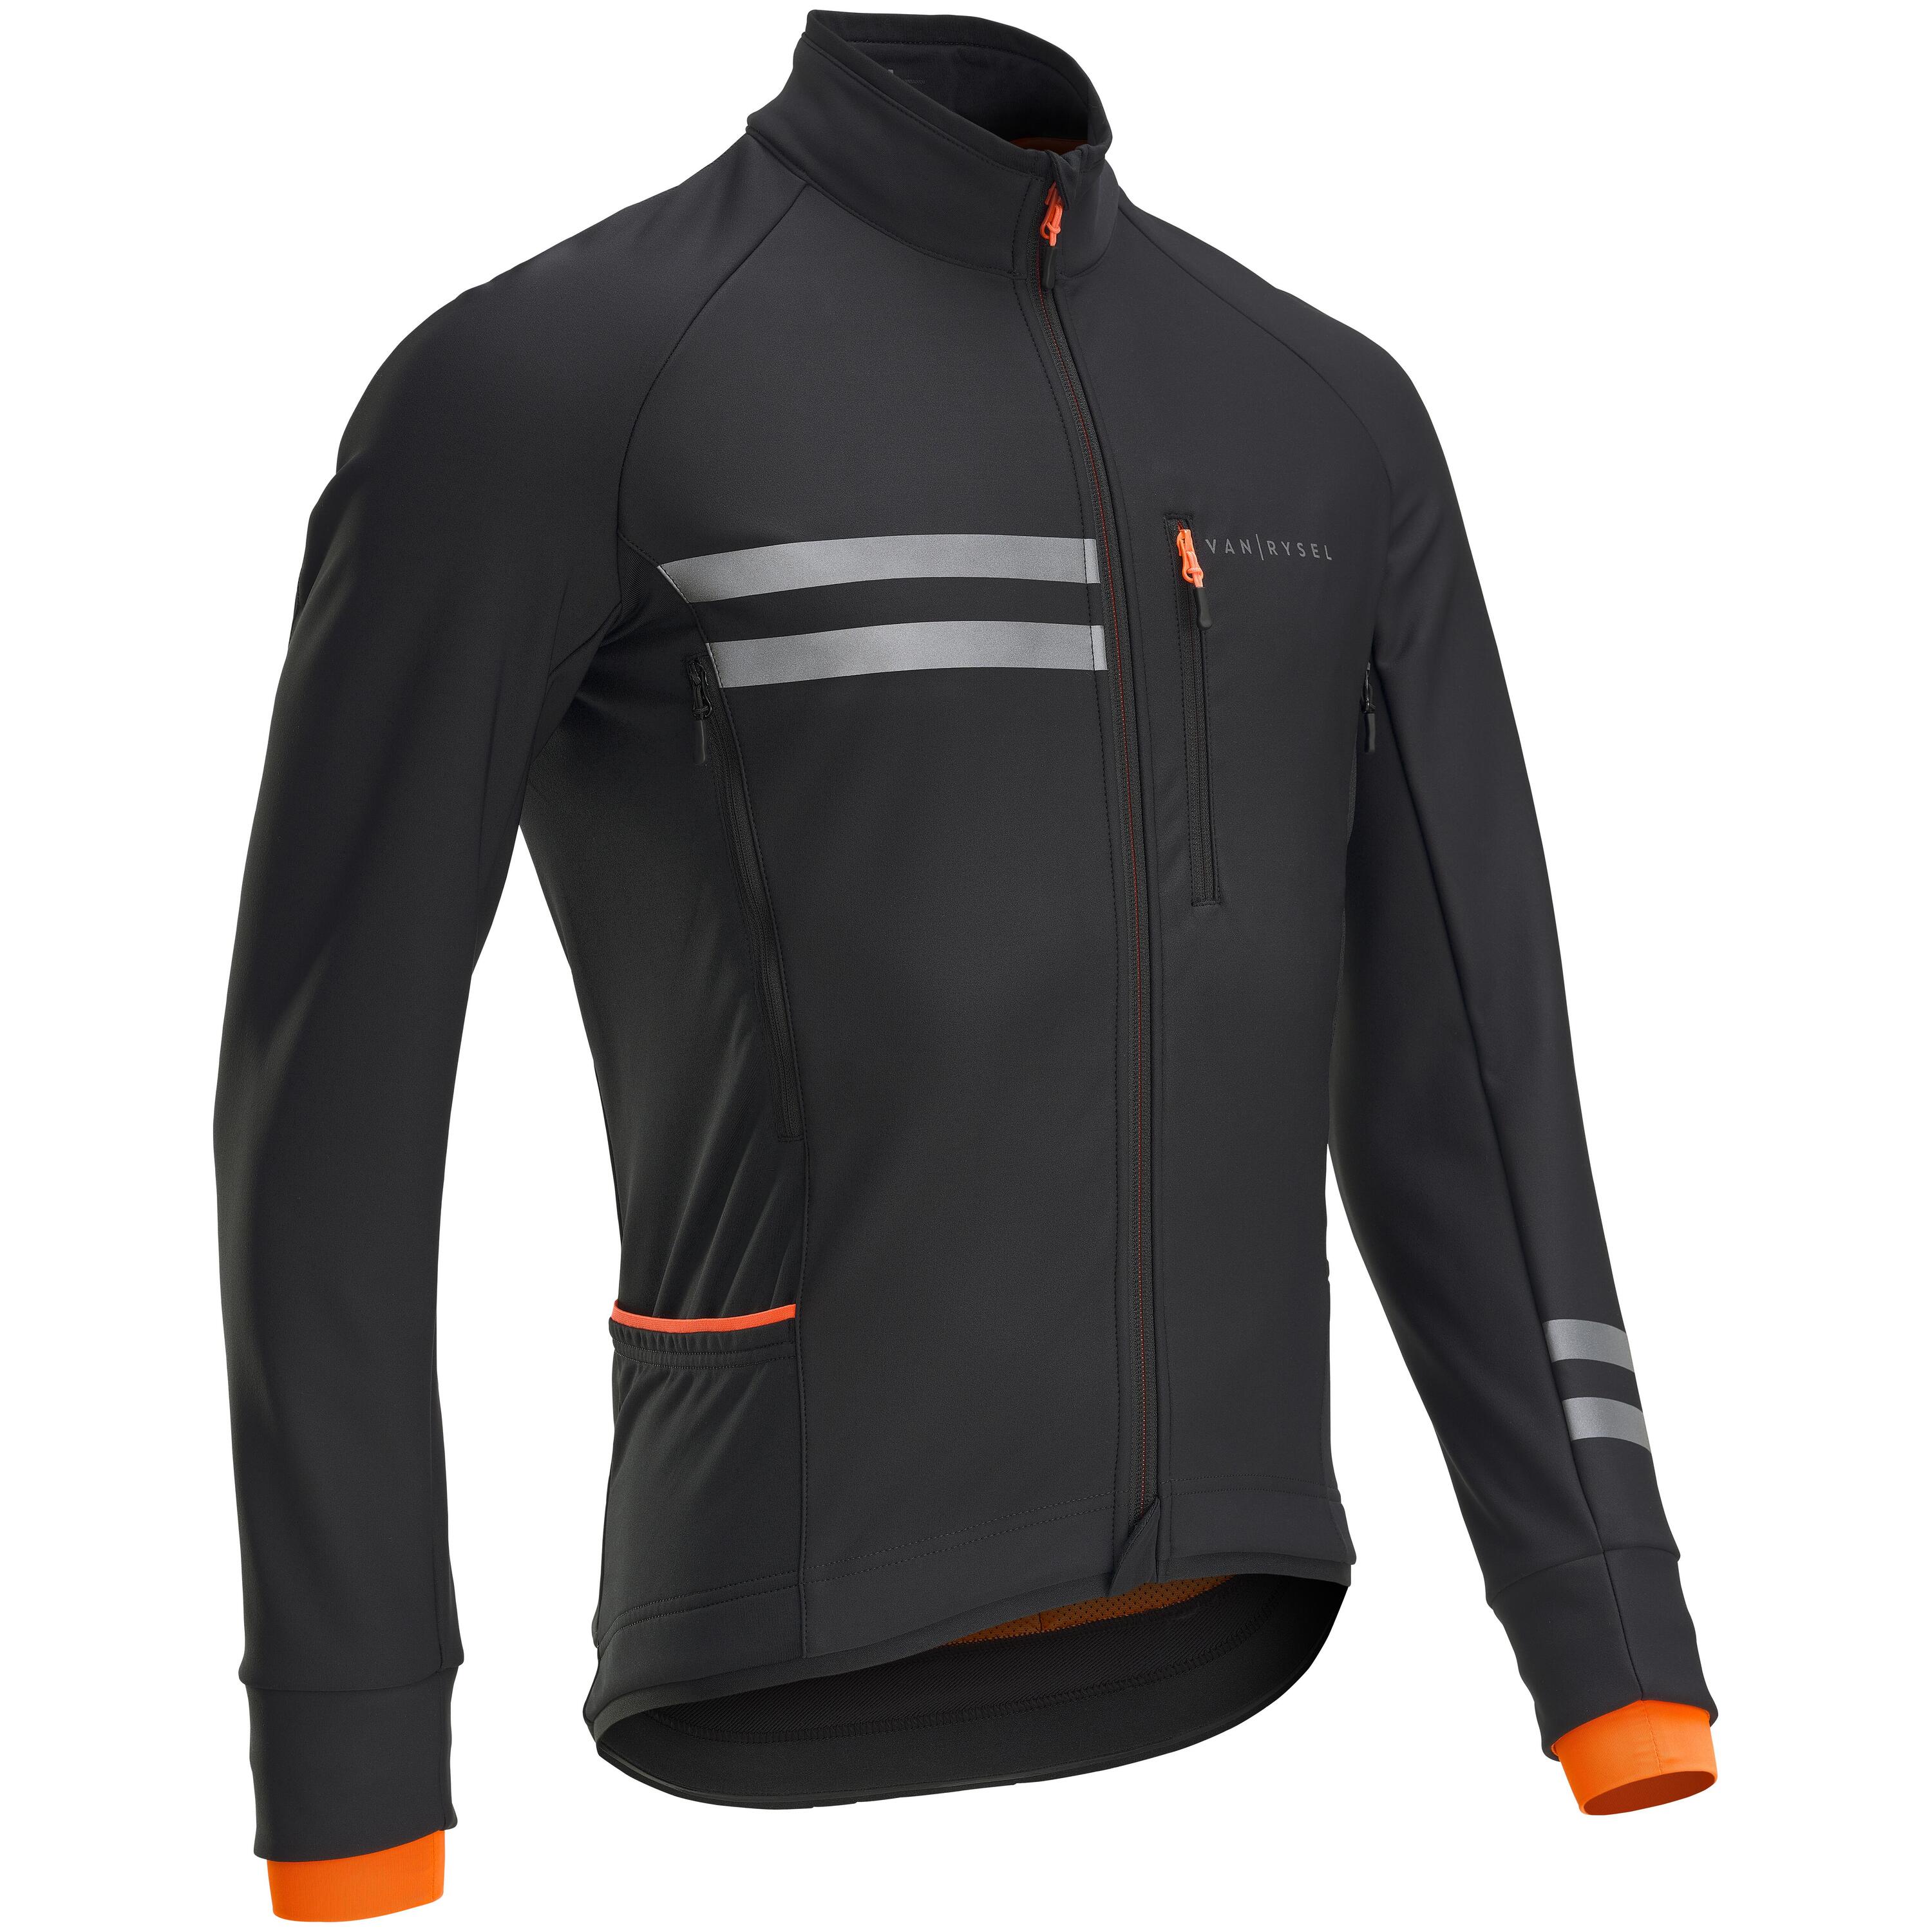 VAN RYSEL Men's Long-Sleeved Winter Road Cycling Jacket RC 500 - Black